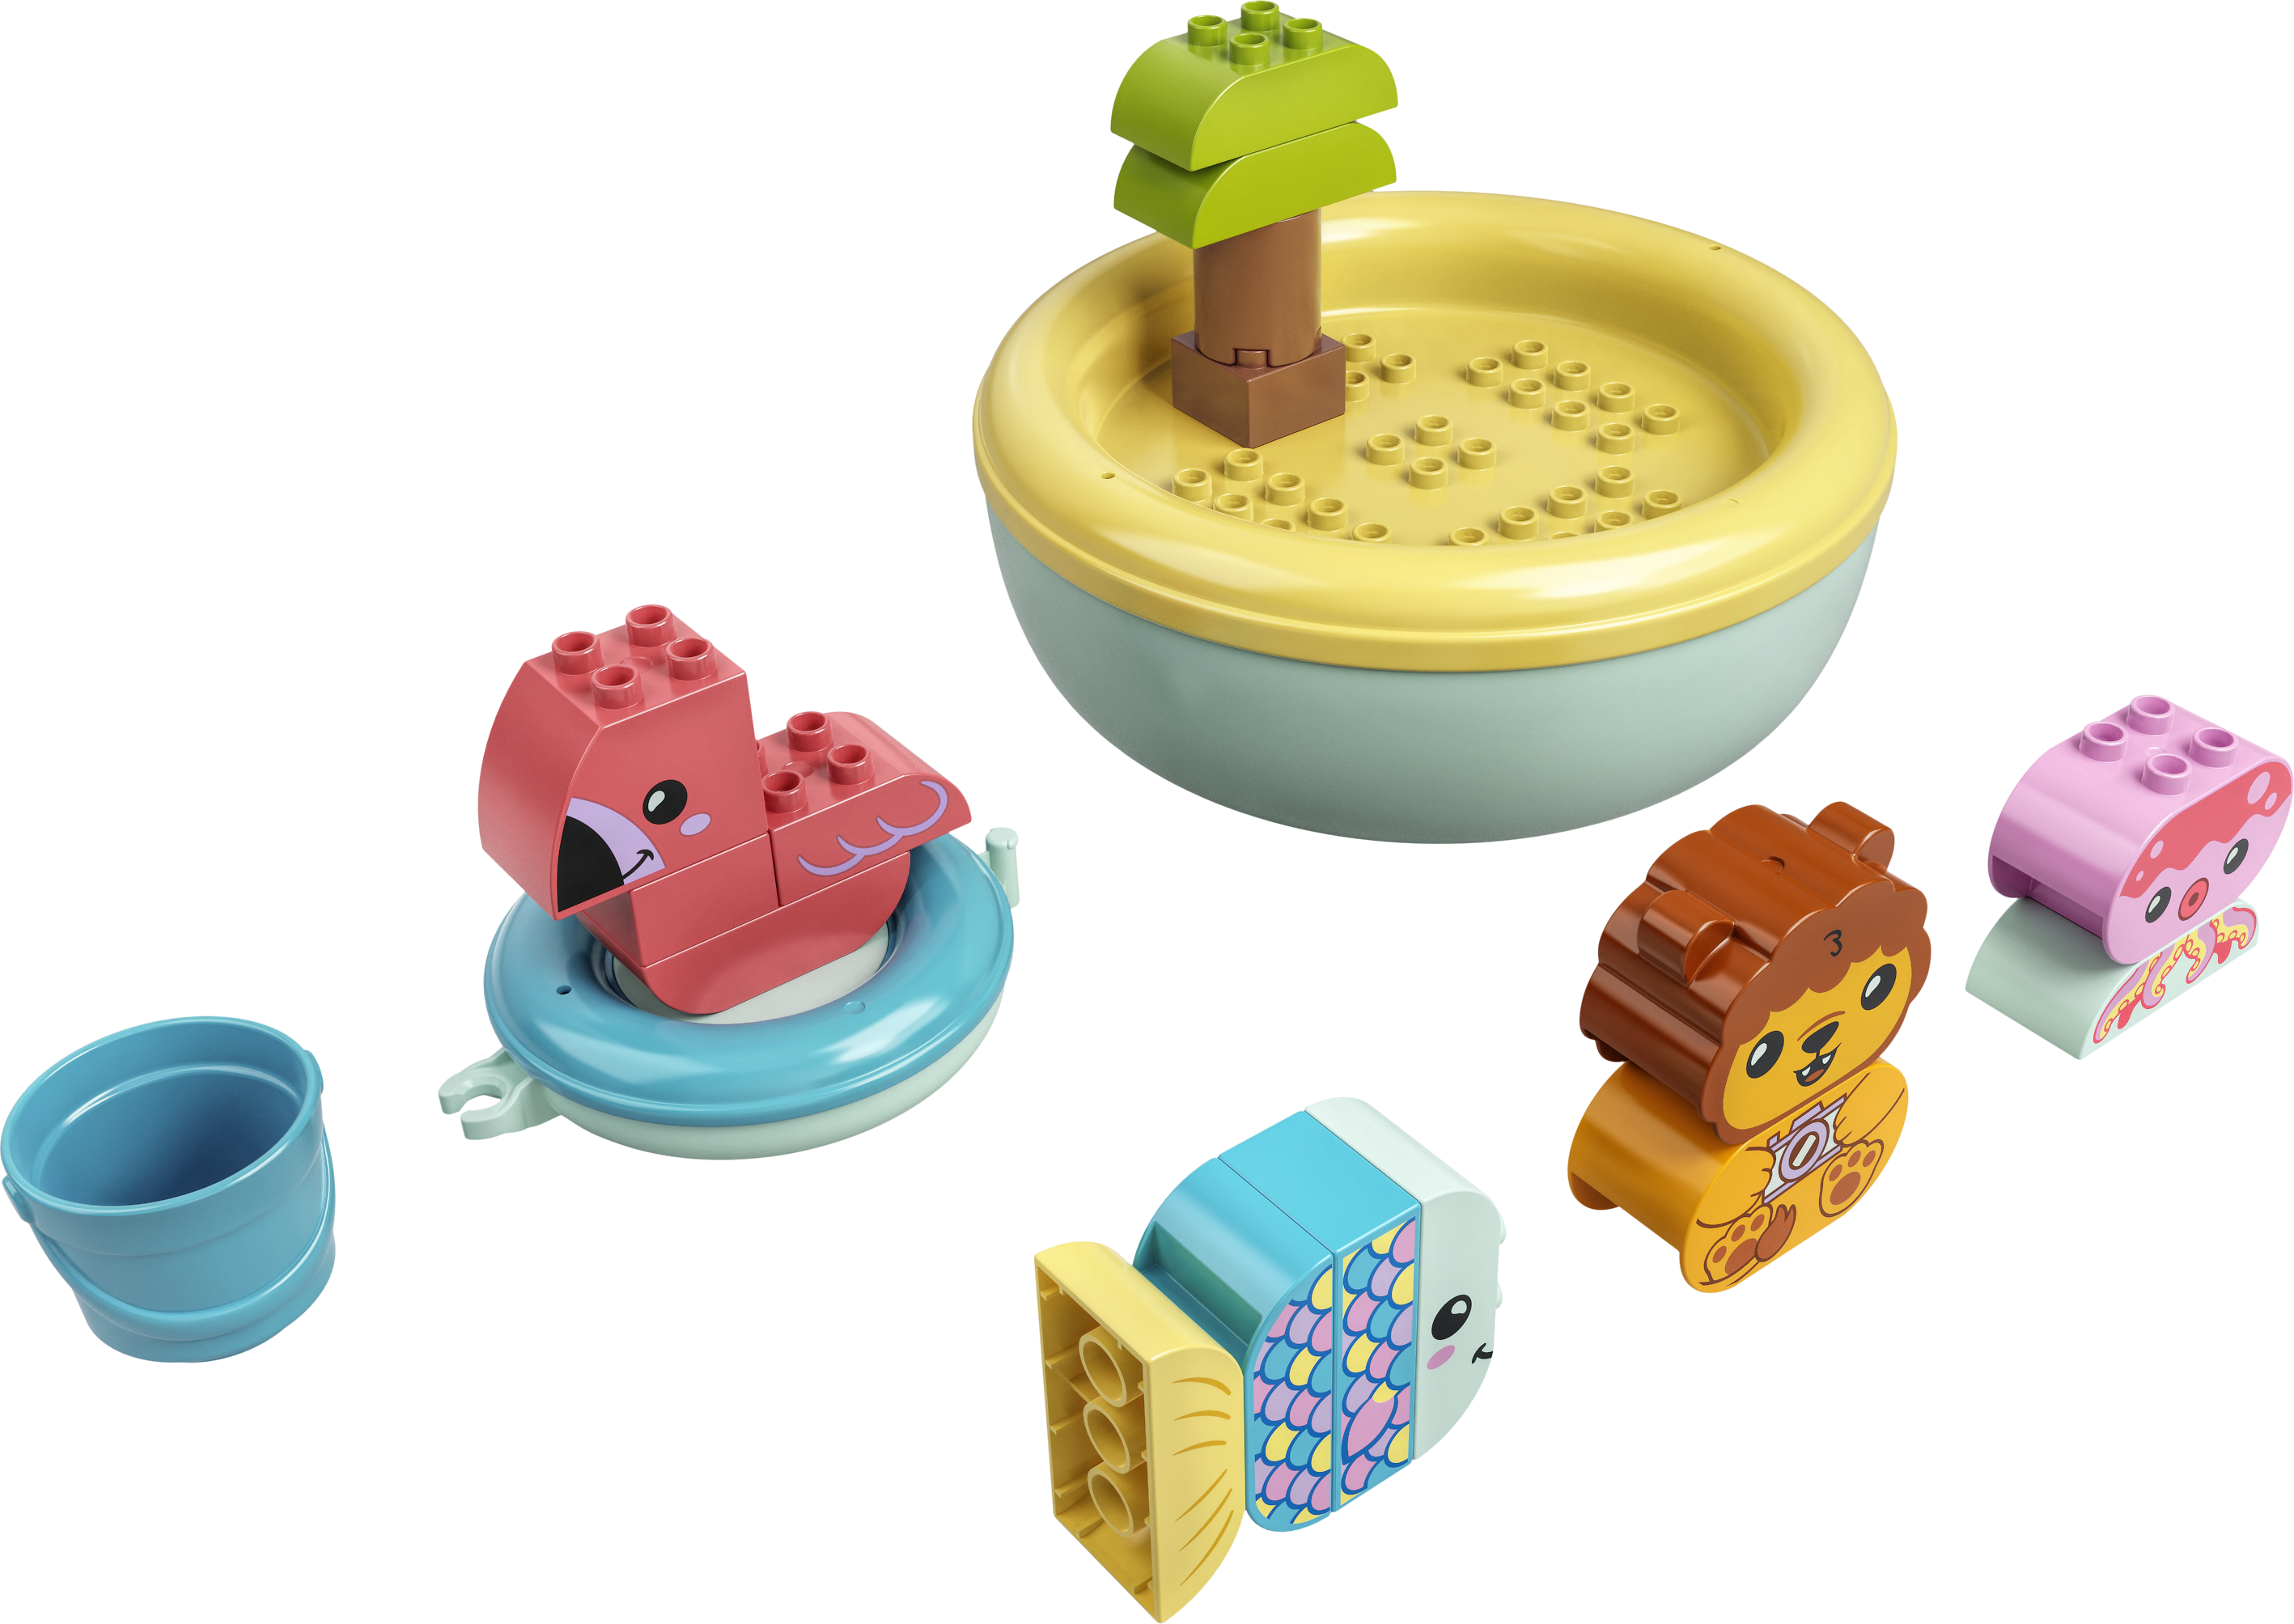 LEGO® DUPLO® 10966 Badewannenspaß: Schwimmende Tierinsel